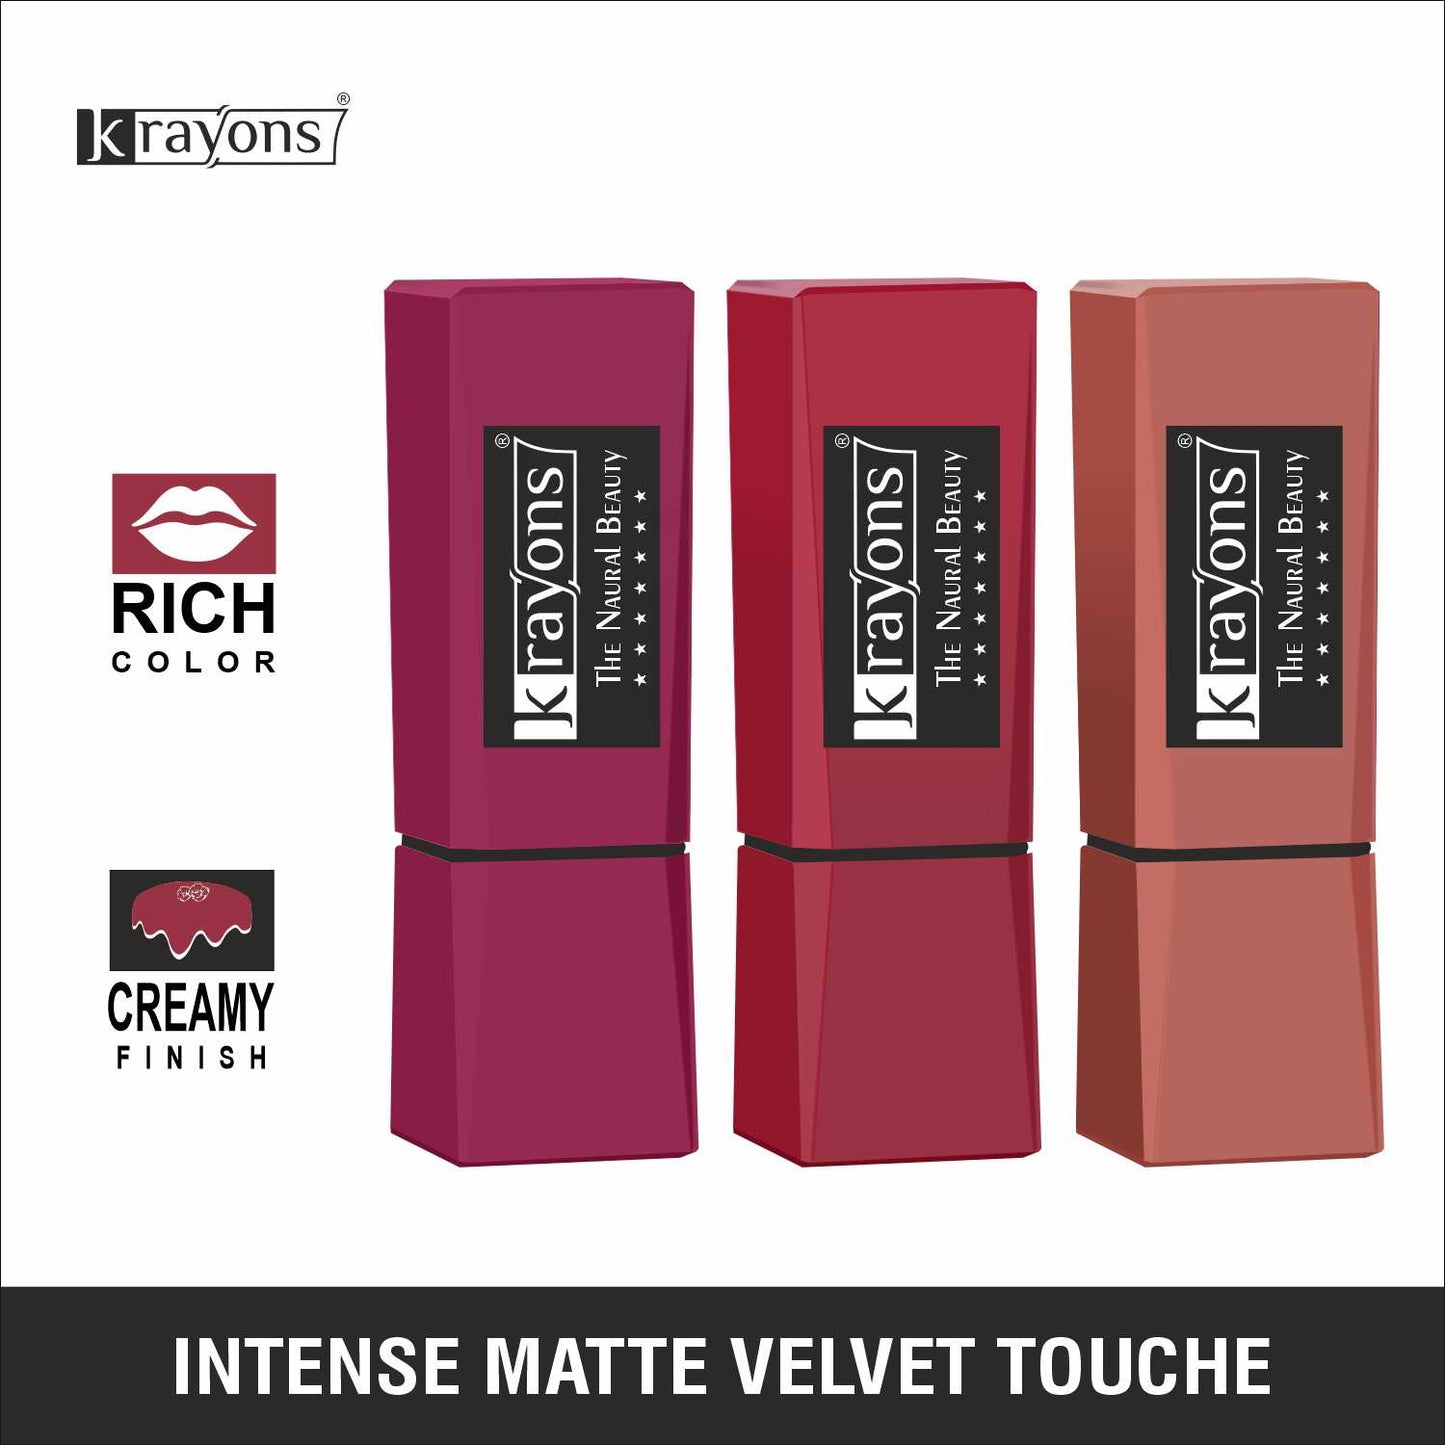 Krayons Intense Matte Lipstick, Waterproof, Longlasting, Rose Red, Scarlet Red, Nude Beige, 3.5gm Each (Pack of 3)